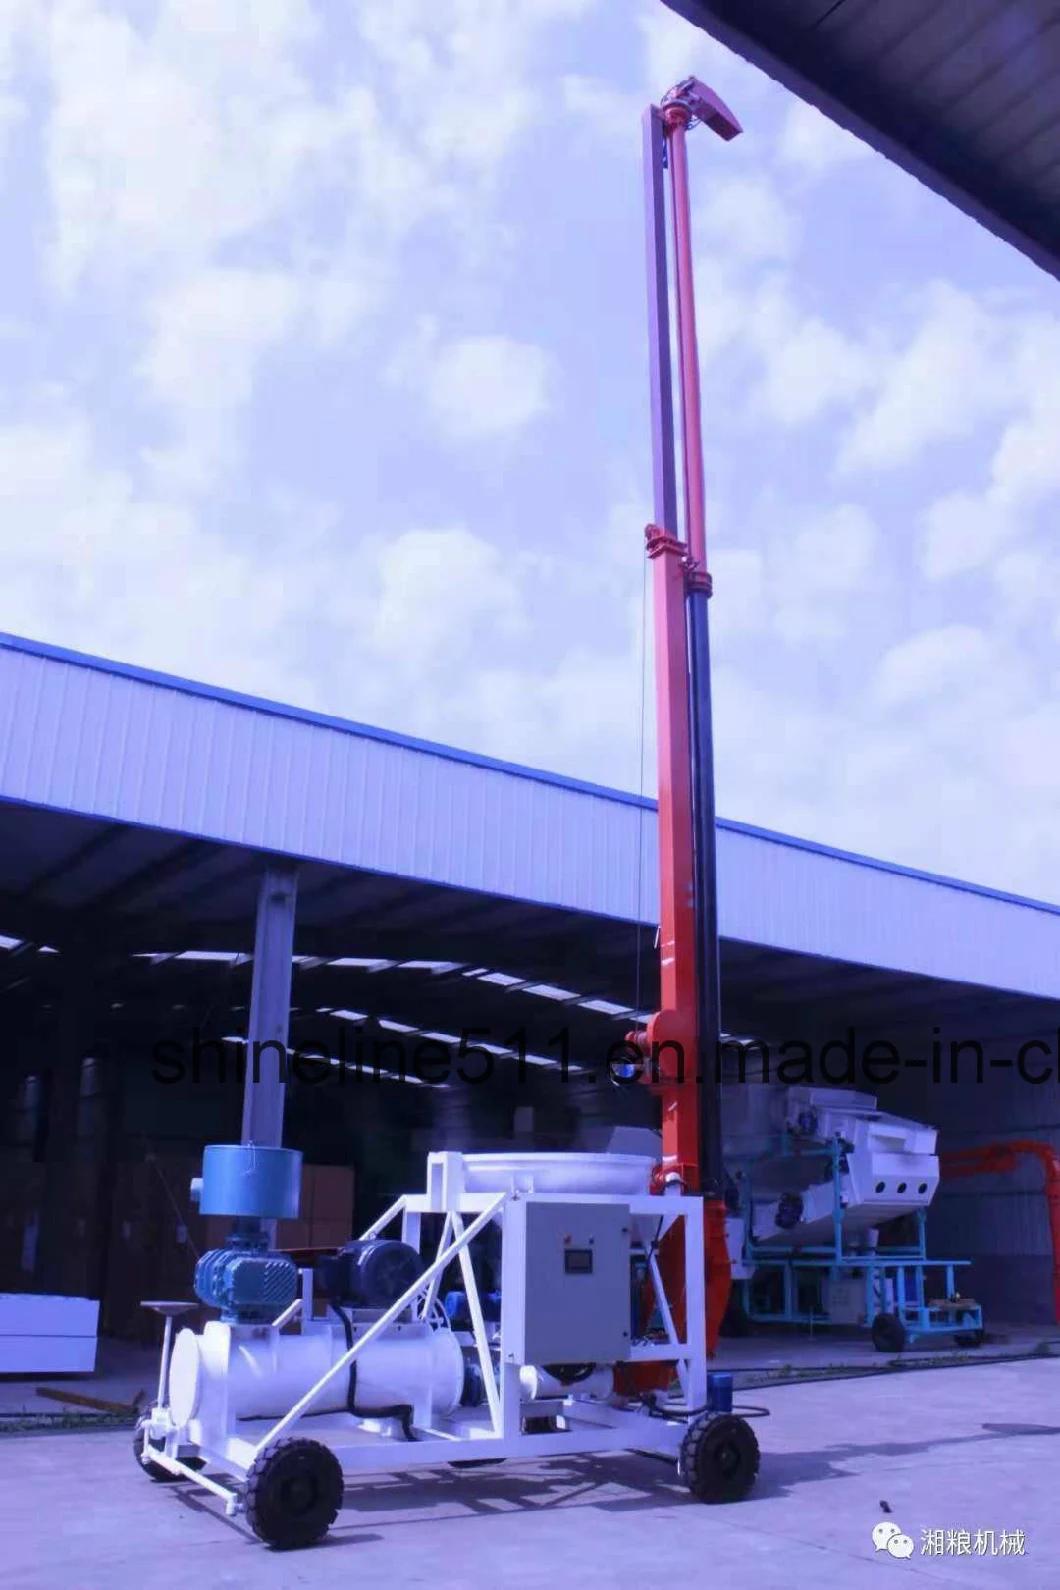 New System Xiangliang Brand Standard Exportatiion Packing Light Conveyor Grain Pump